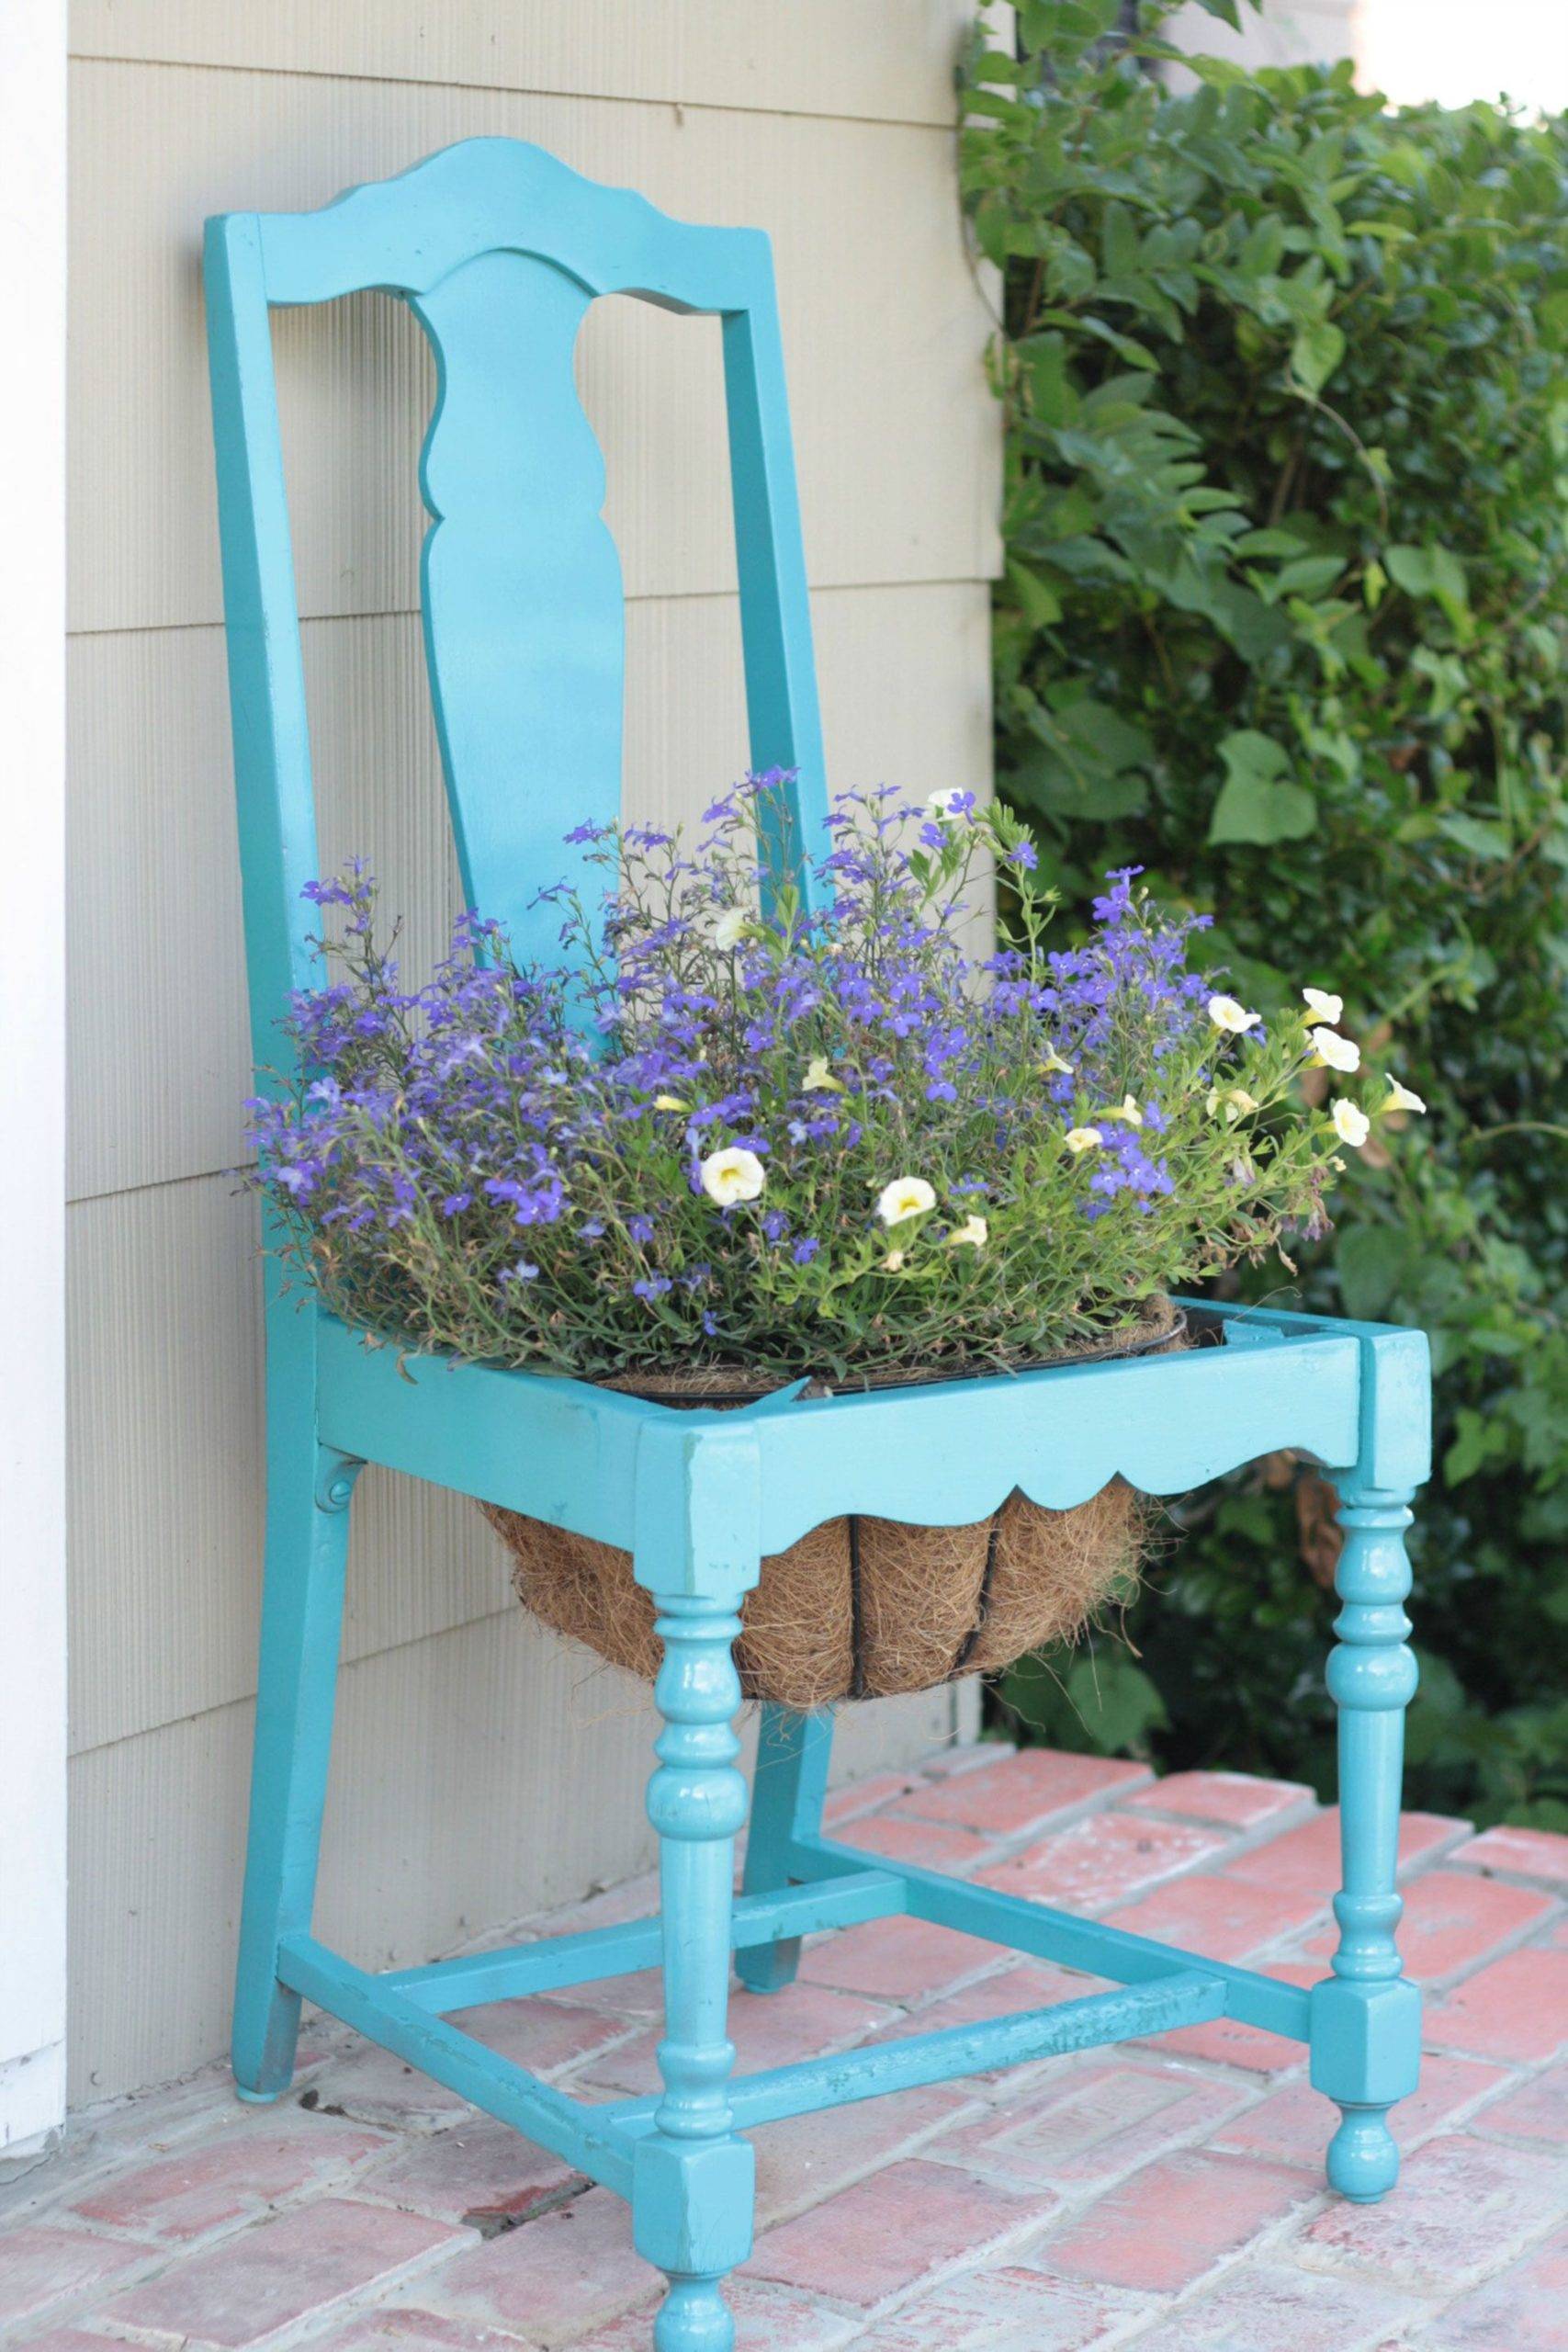 Bạn có thể dành một buổi chiều cuối tuần để thực hiện dự án DIY độc lạ này, đó là sử dụng chiếc ghế cũ, sơn màu và biến chỗ ngồi thành chậu hoa.